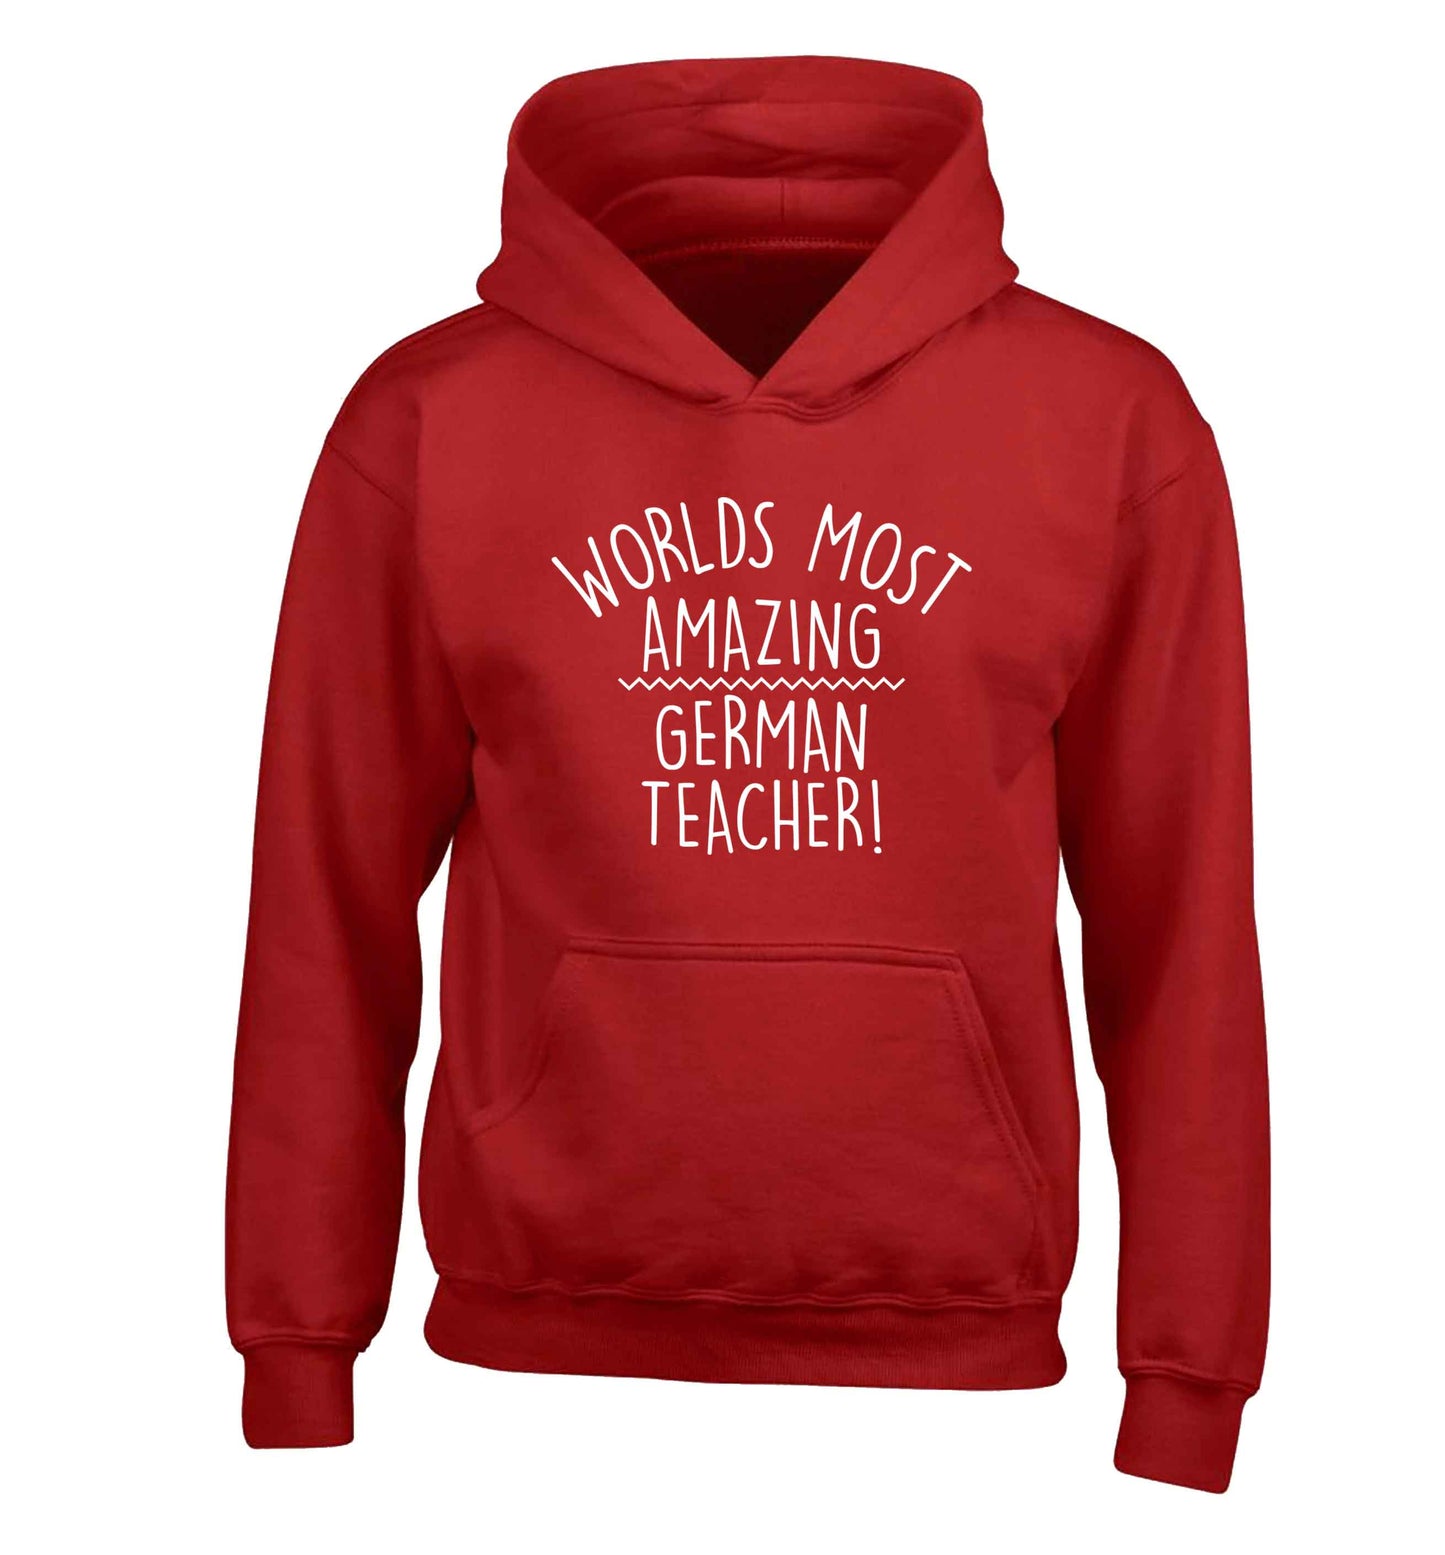 Worlds most amazing German teacher children's red hoodie 12-13 Years